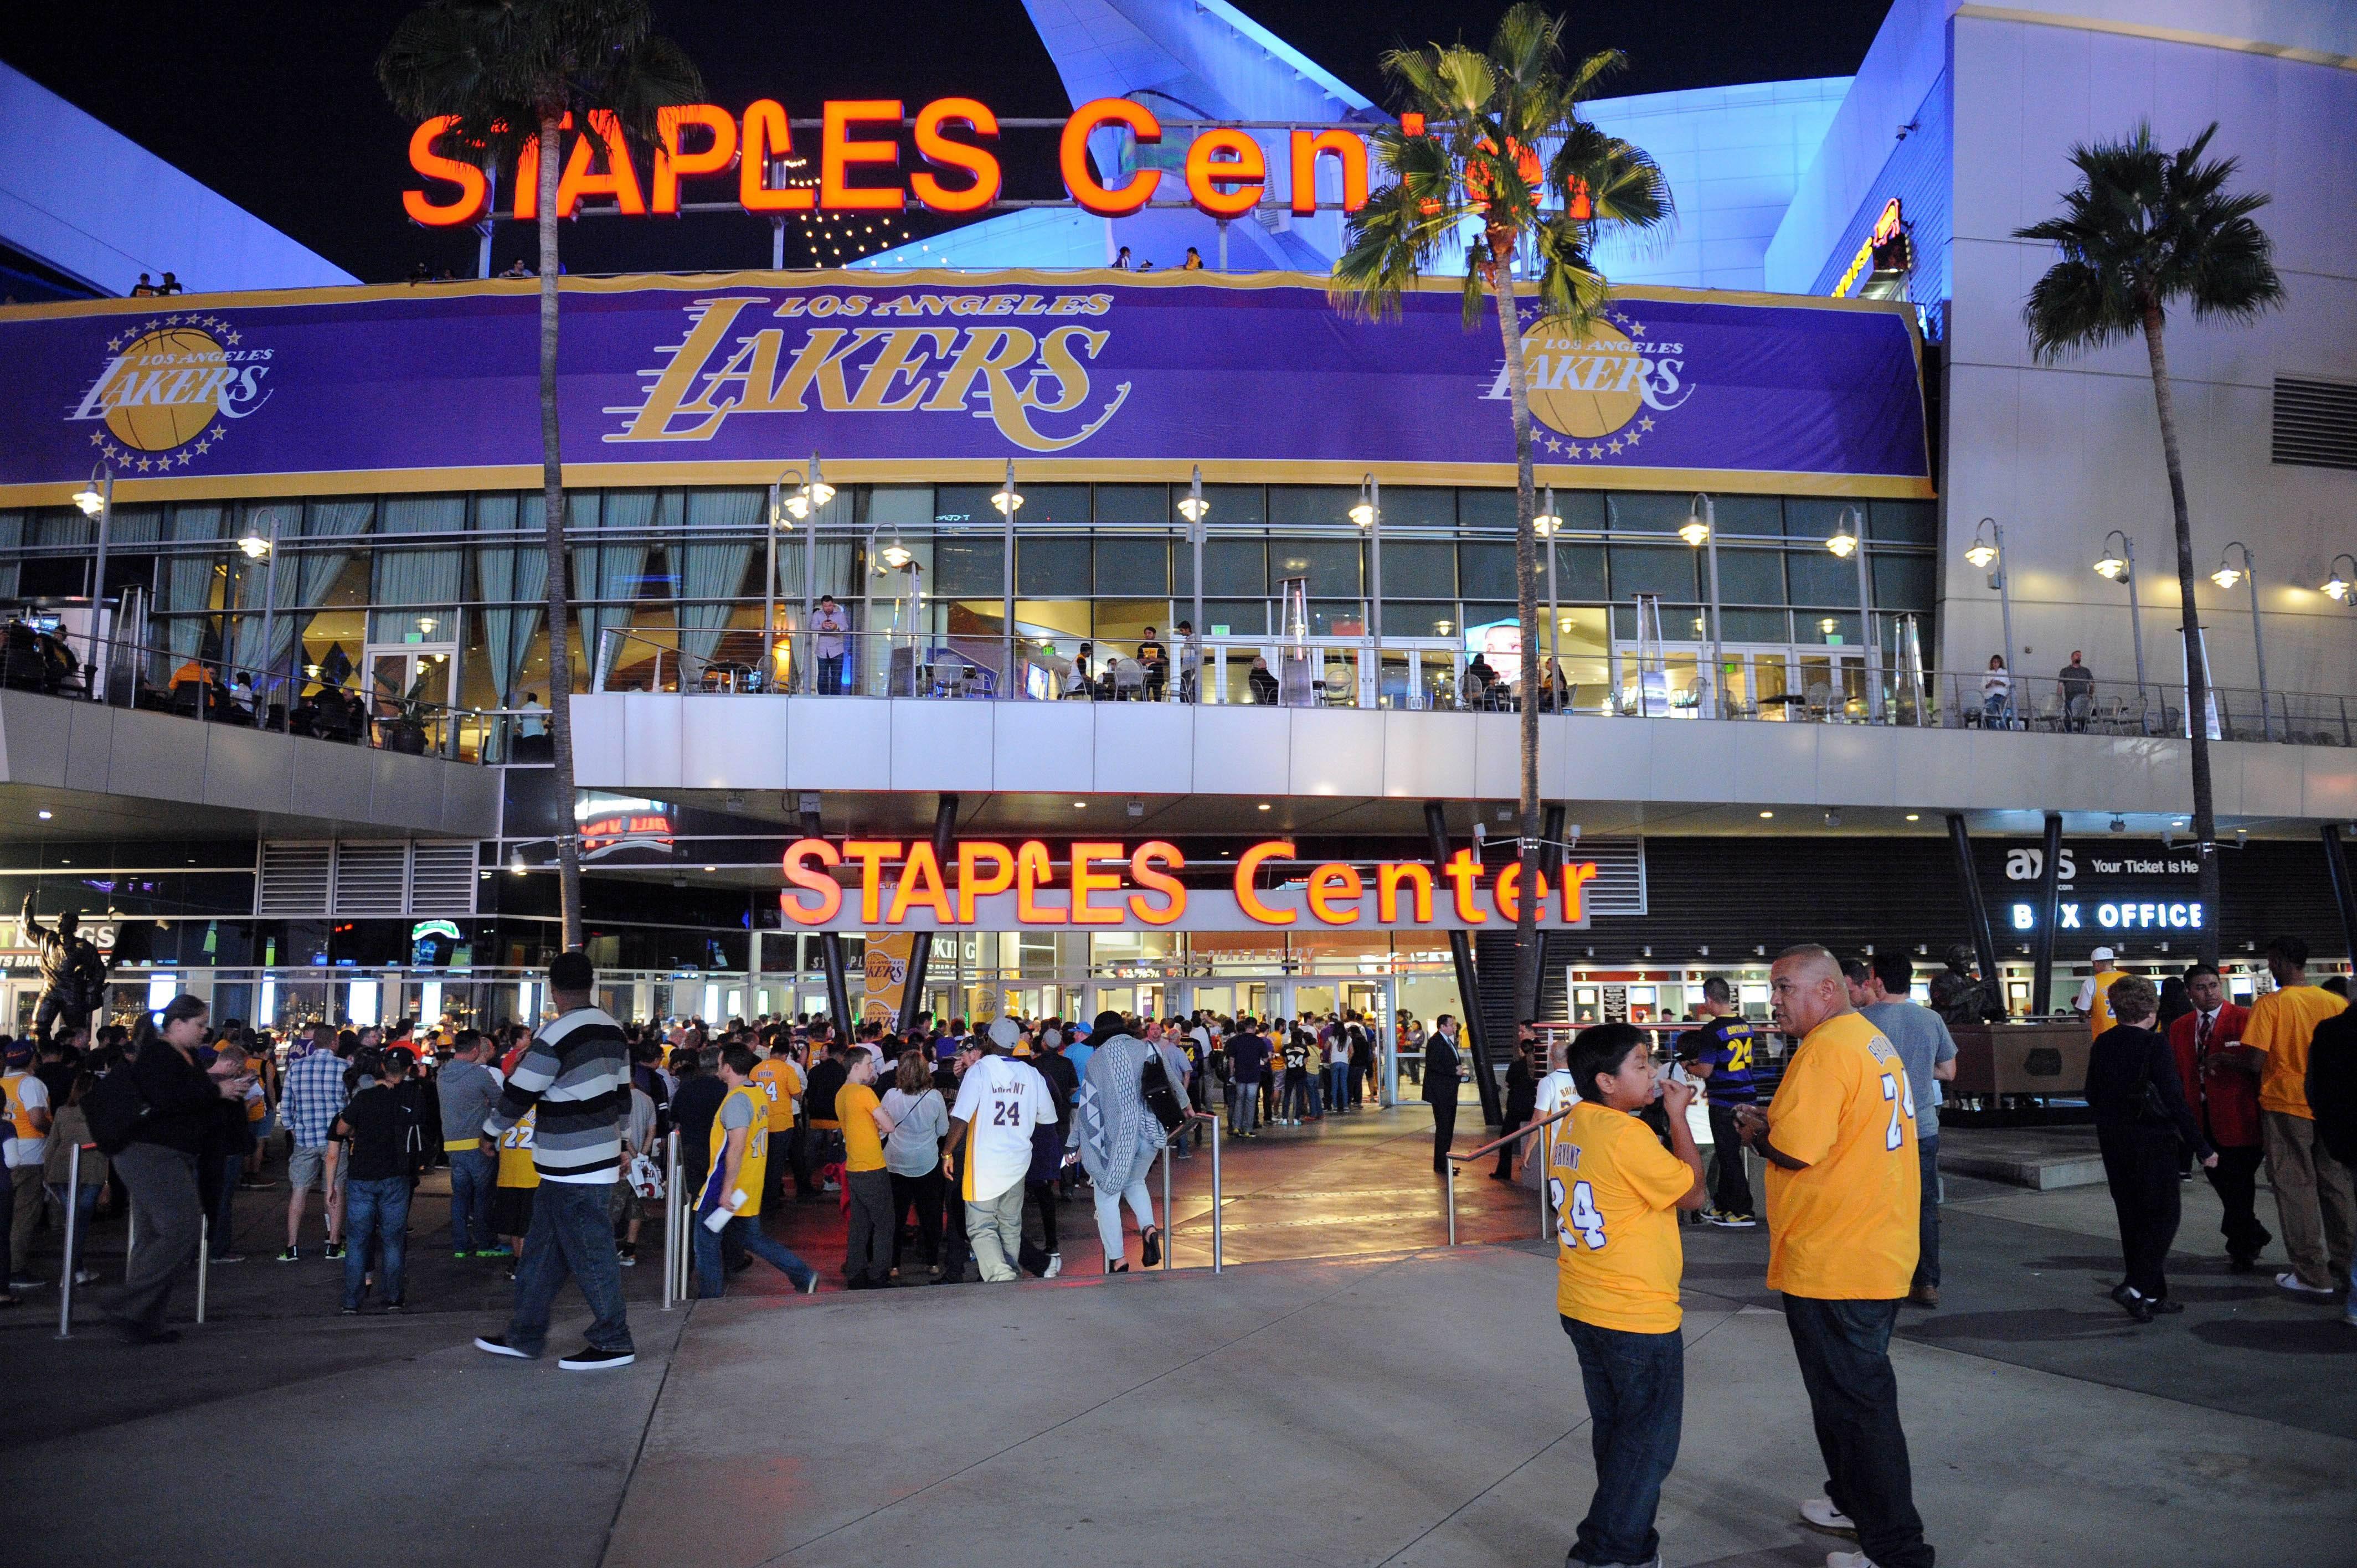 【携程攻略】洛杉矶市斯台普斯中心景点,每一个喜欢篮球的人应该都会很想到这个圣地来，斯台普斯中心（Staple…